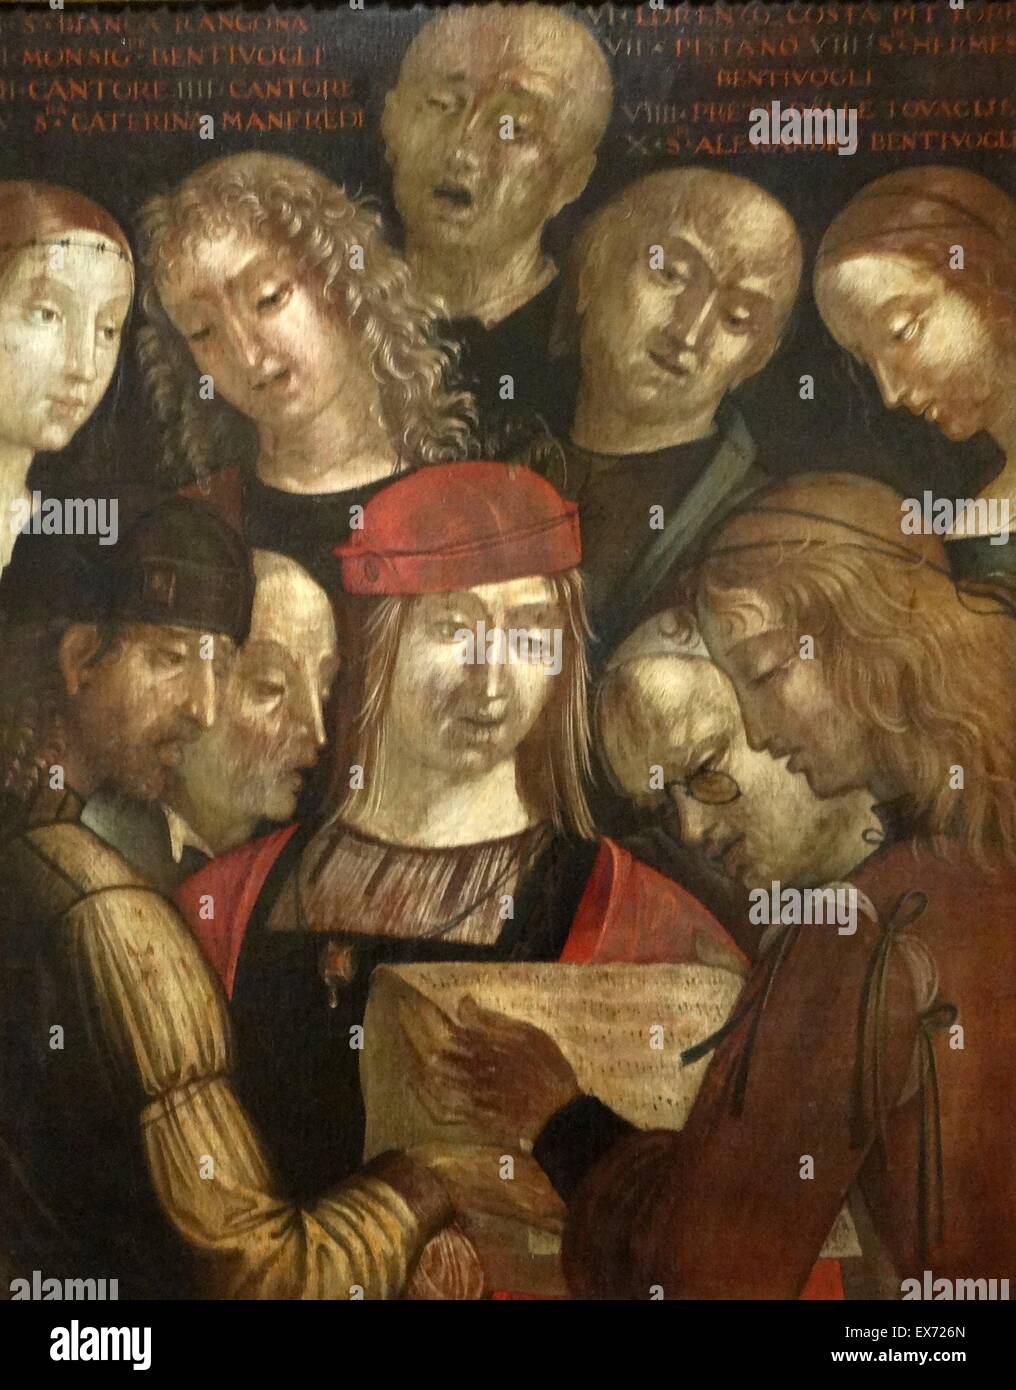 Ritratto di gruppo con la famiglia Bentivoglio 1493 da Lorenzo Costa 1460 - 1535. Olio su tela Foto Stock